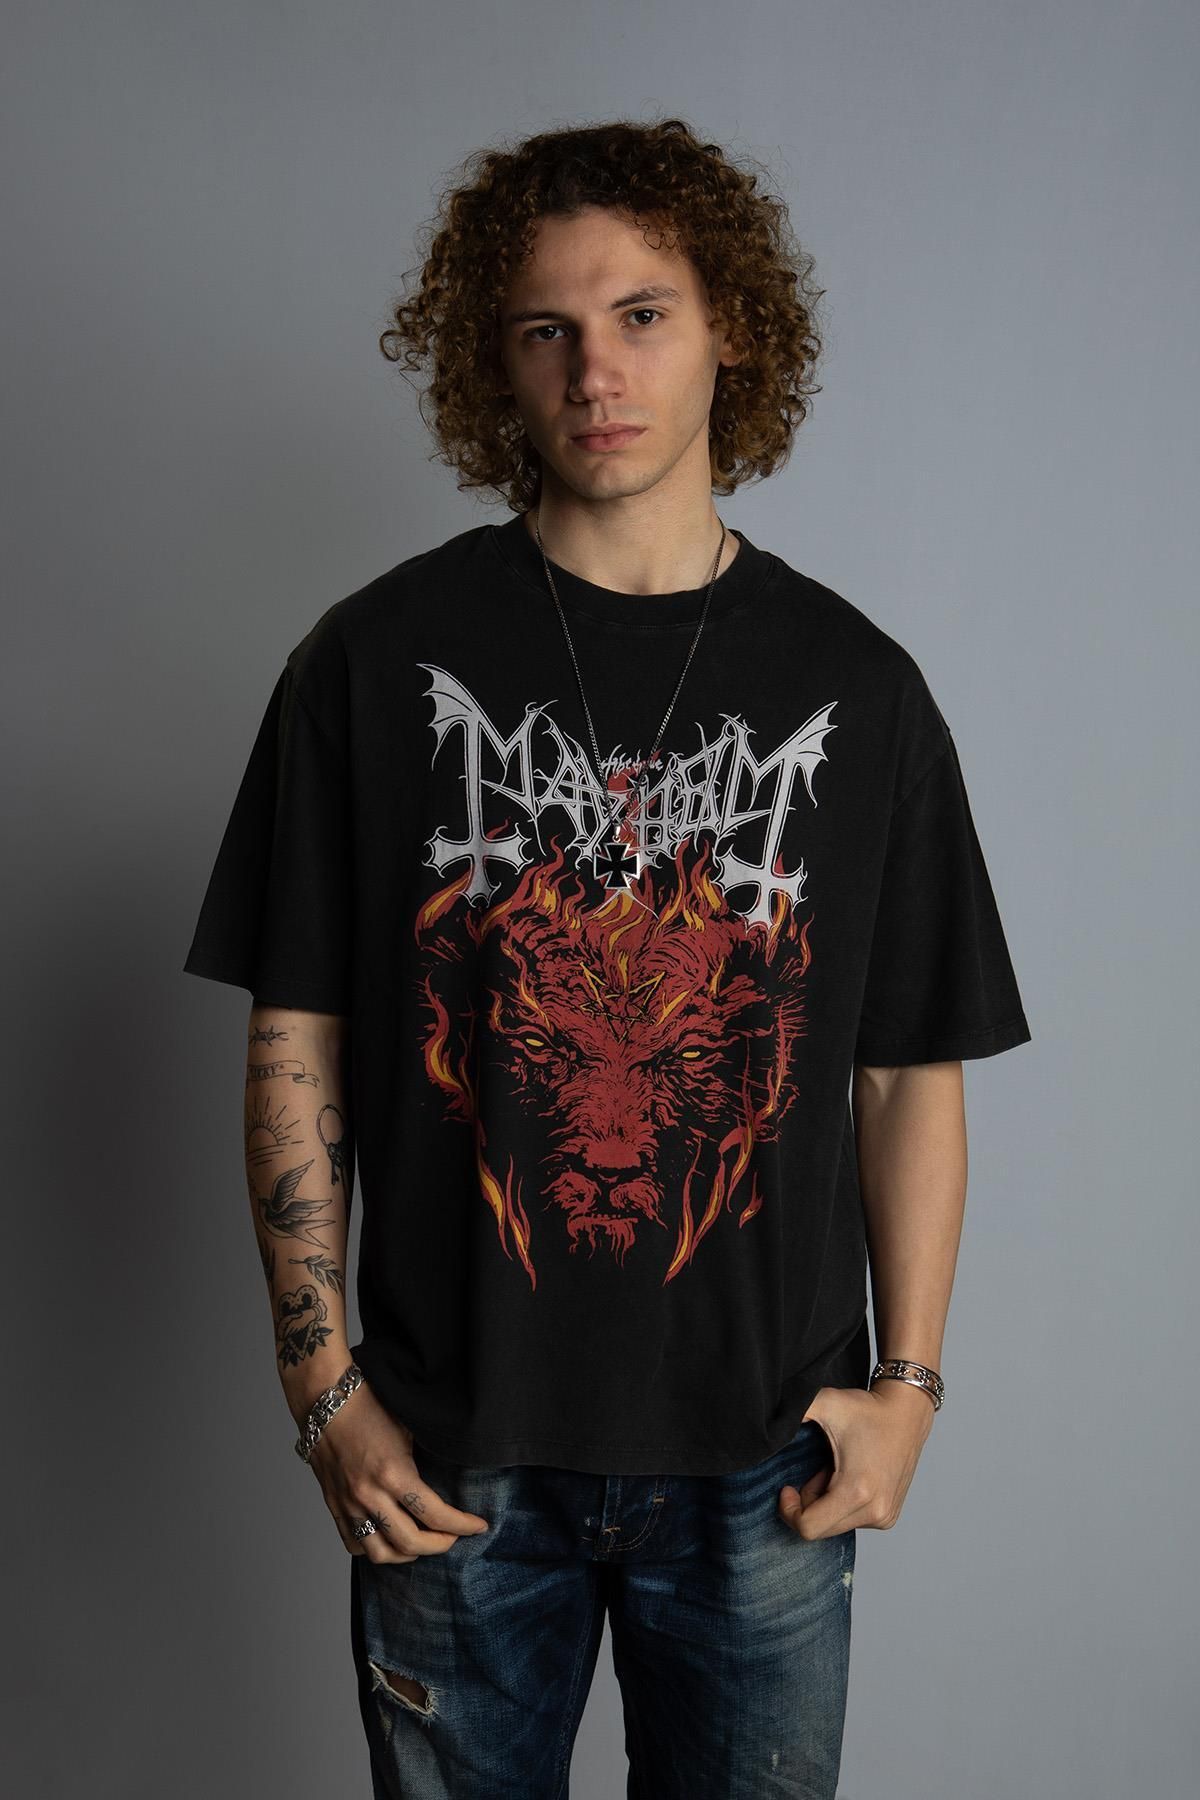 Overdrive ''Mayhem'' Vintage Oversize Metal T-shirt